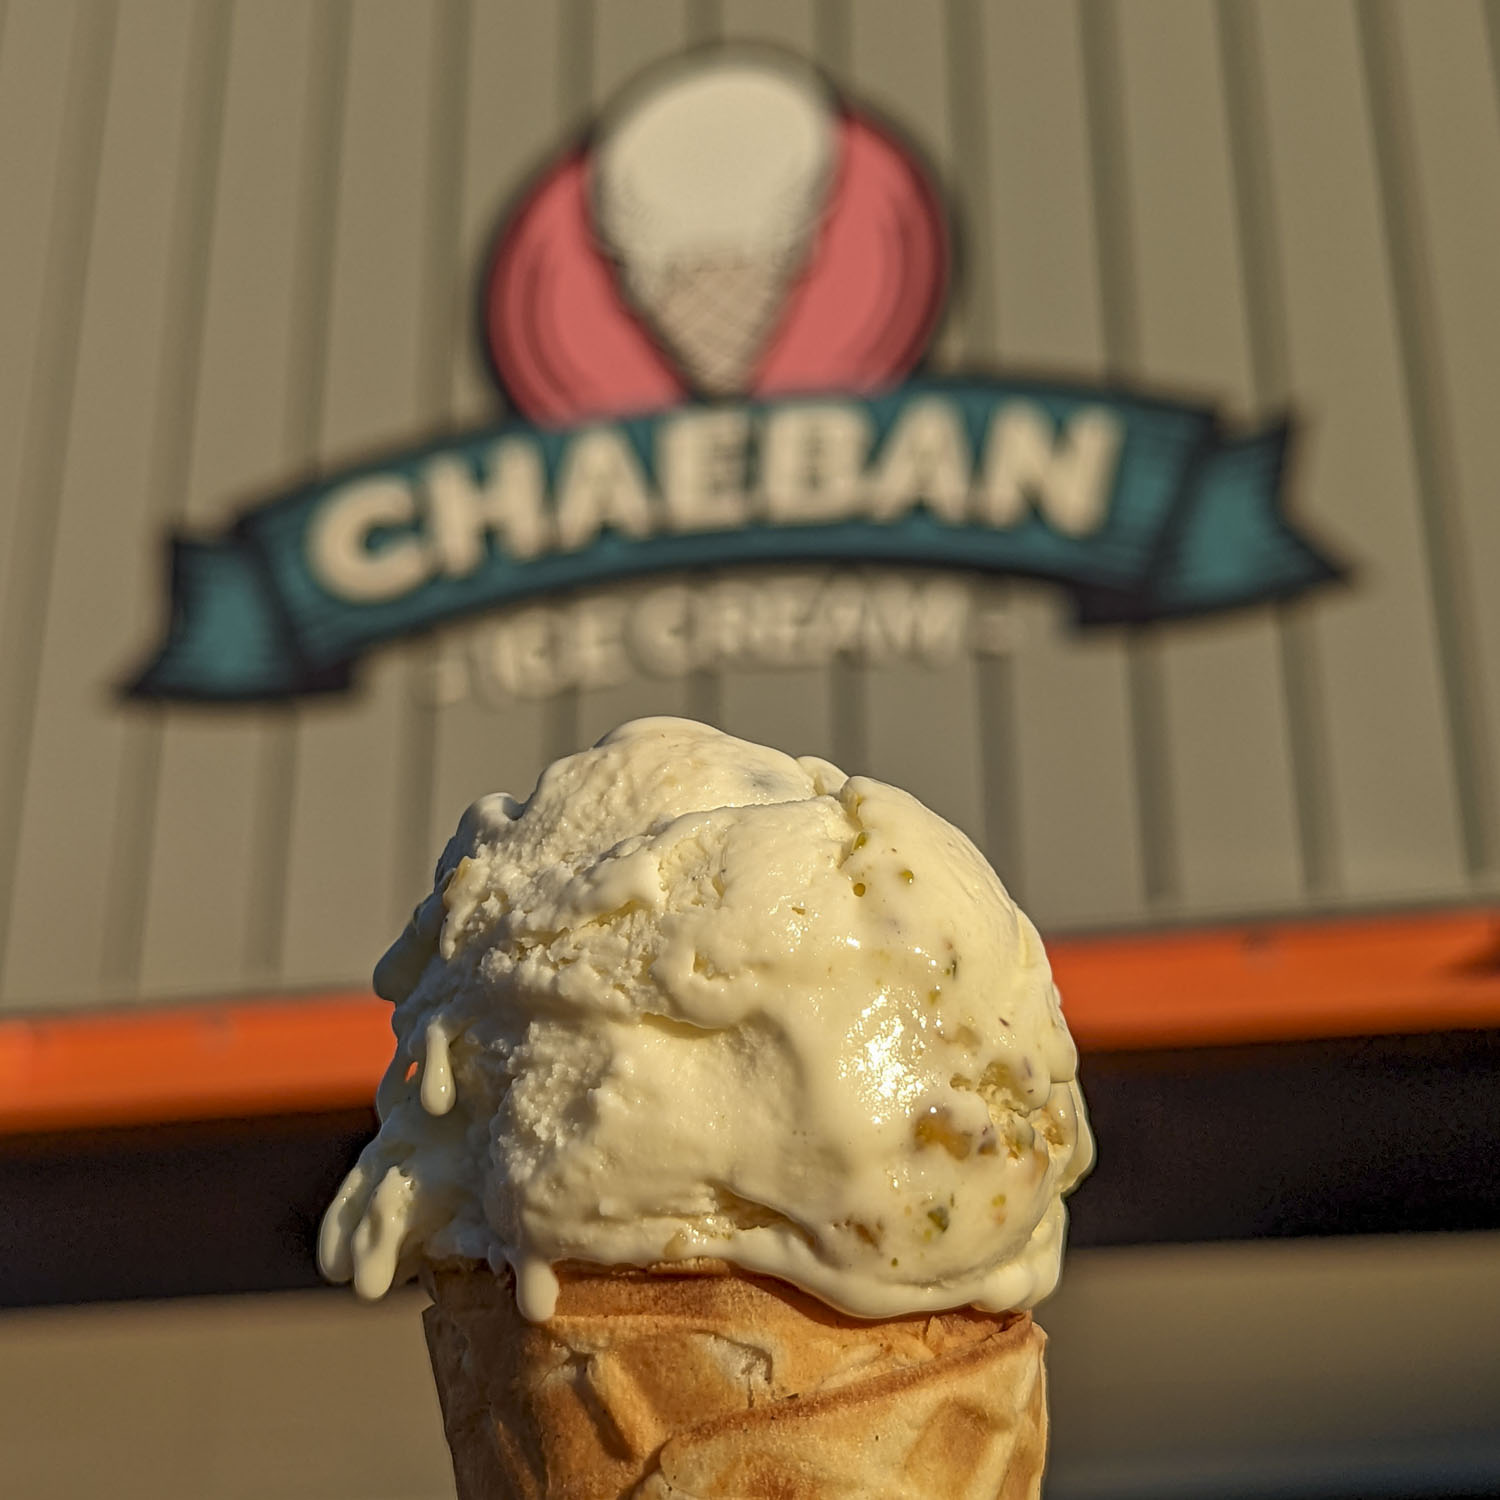 Chaeban Ice Cream in Winnipeg